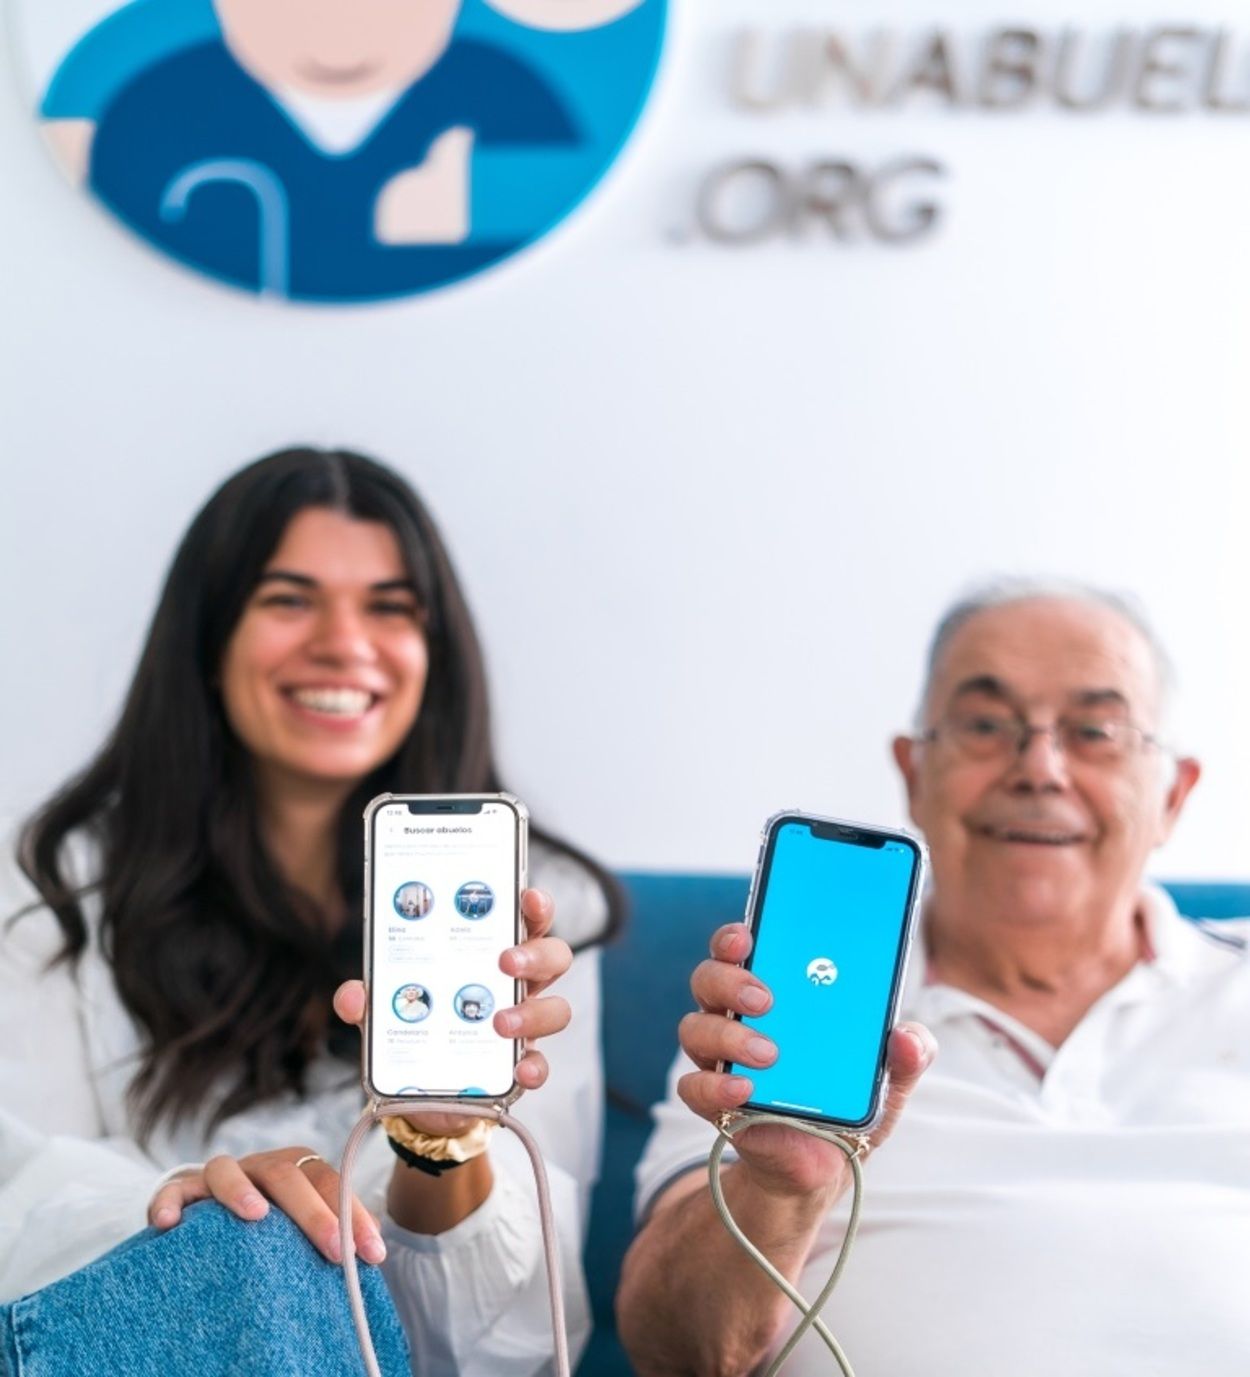 Adopta Un Abuelo lanza una nueva app para conectar mayores con voluntarios de todo el mundo